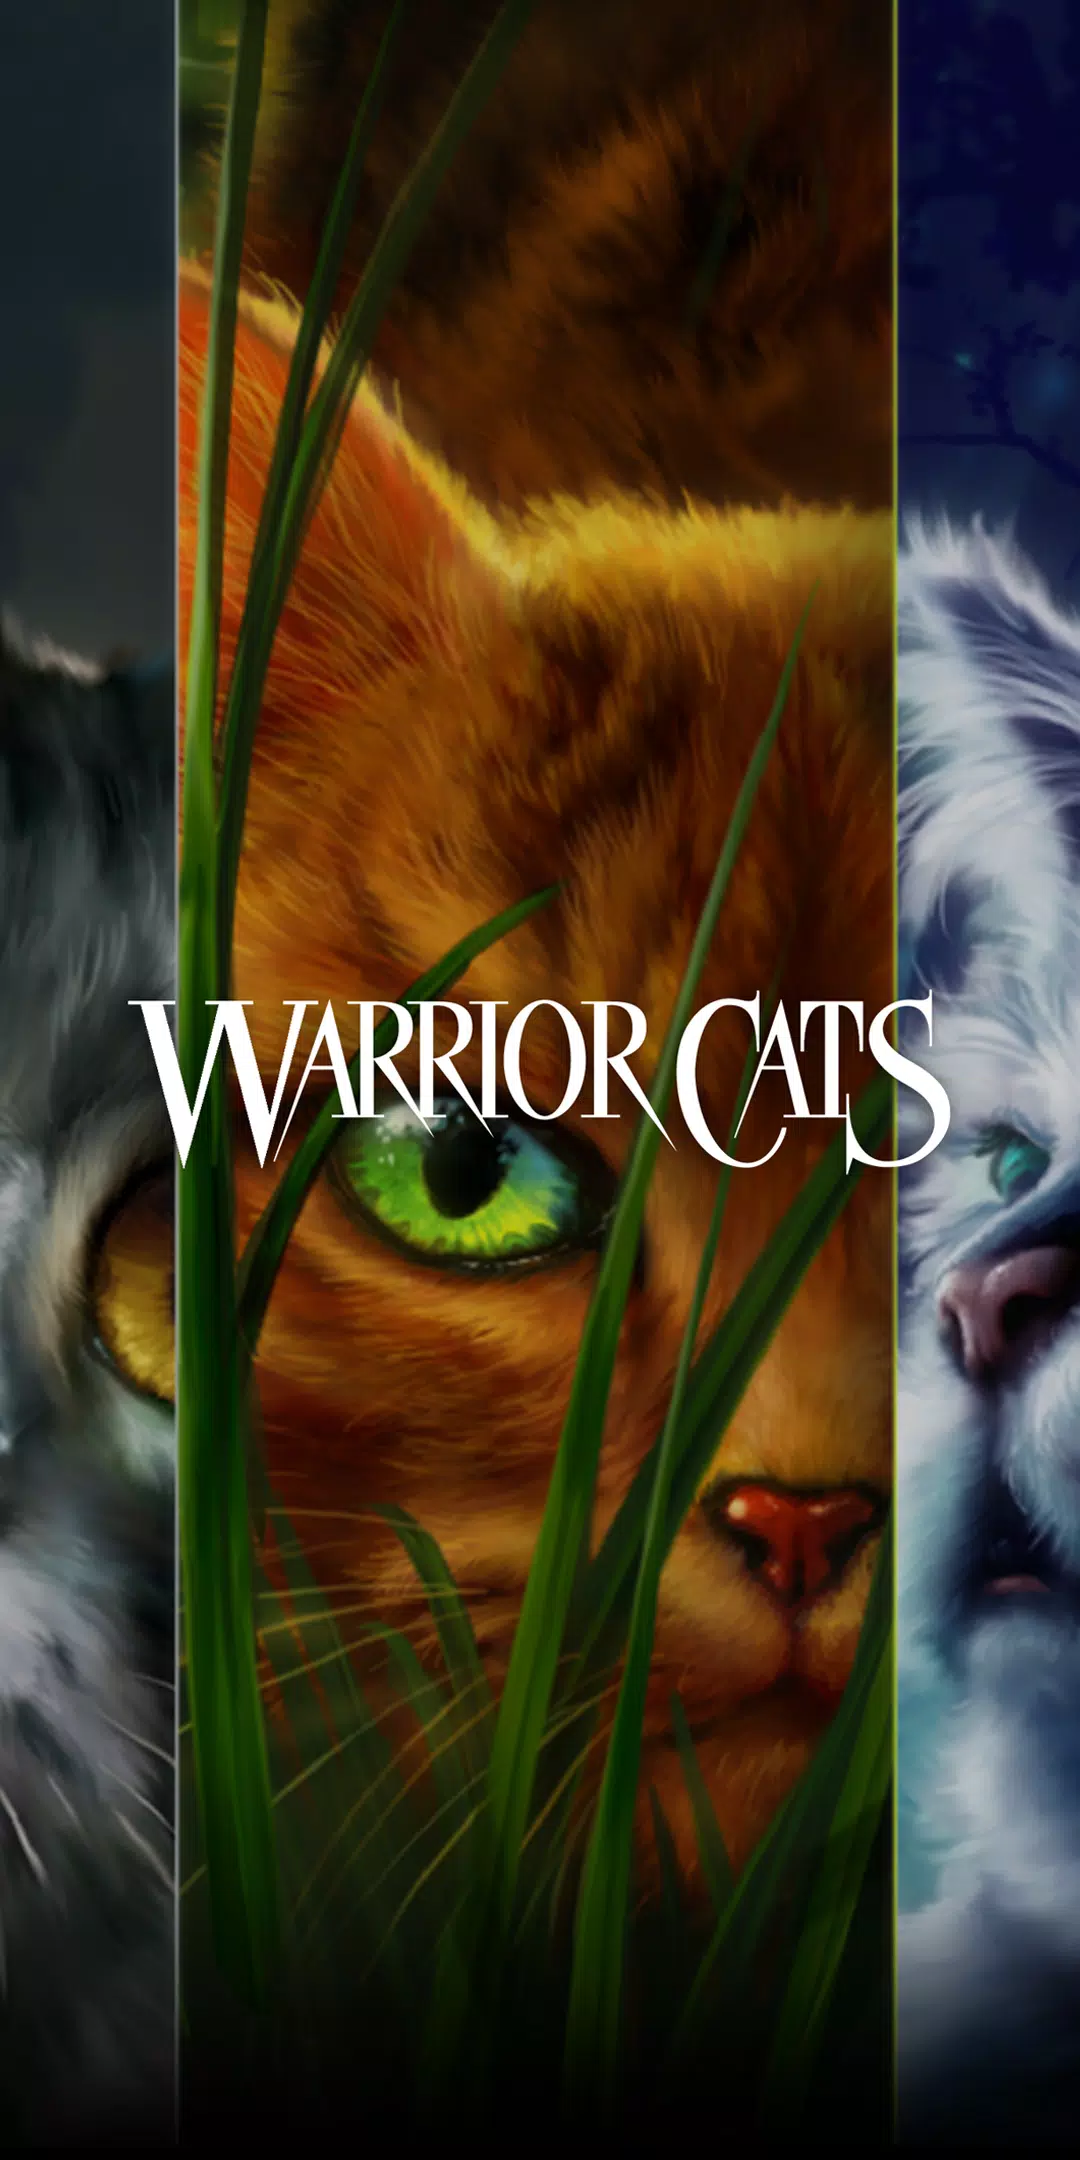 Gatos Guerreiros: Edição Ultimate No Roblox 